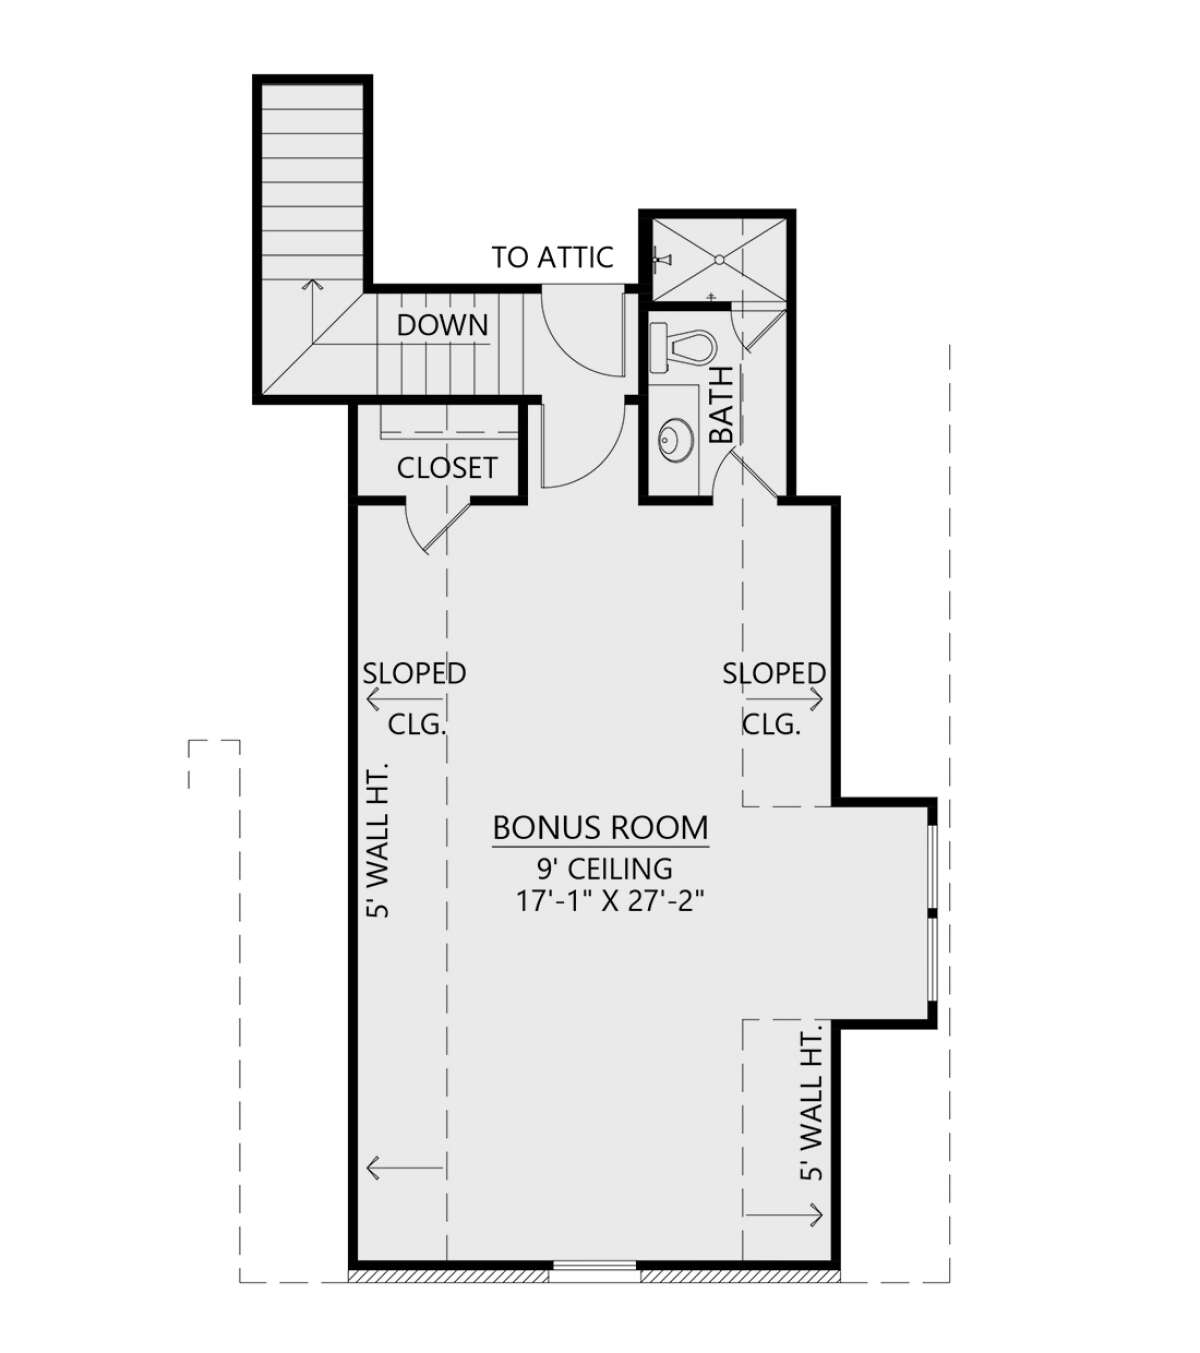 Bonus Room for House Plan #4534-00080